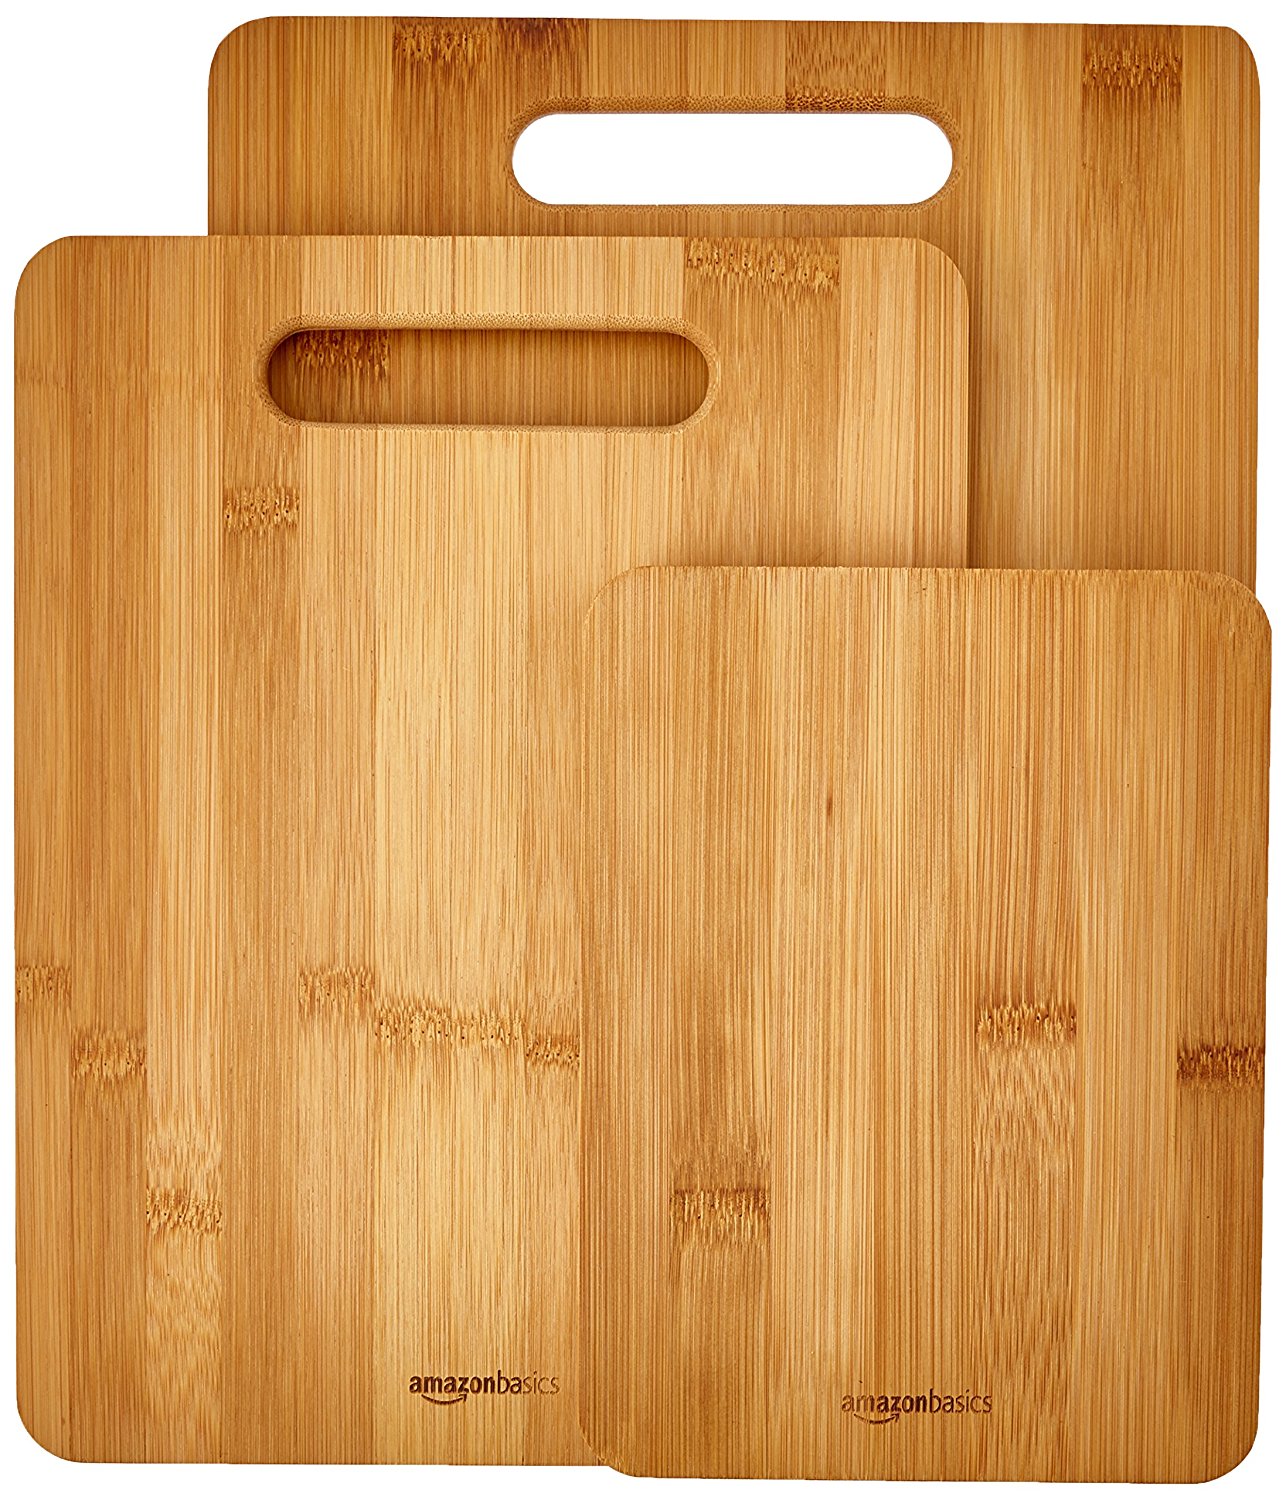 AmazonBasics 3 Piece Bamboo Cutting Board Set – Just $9.99!